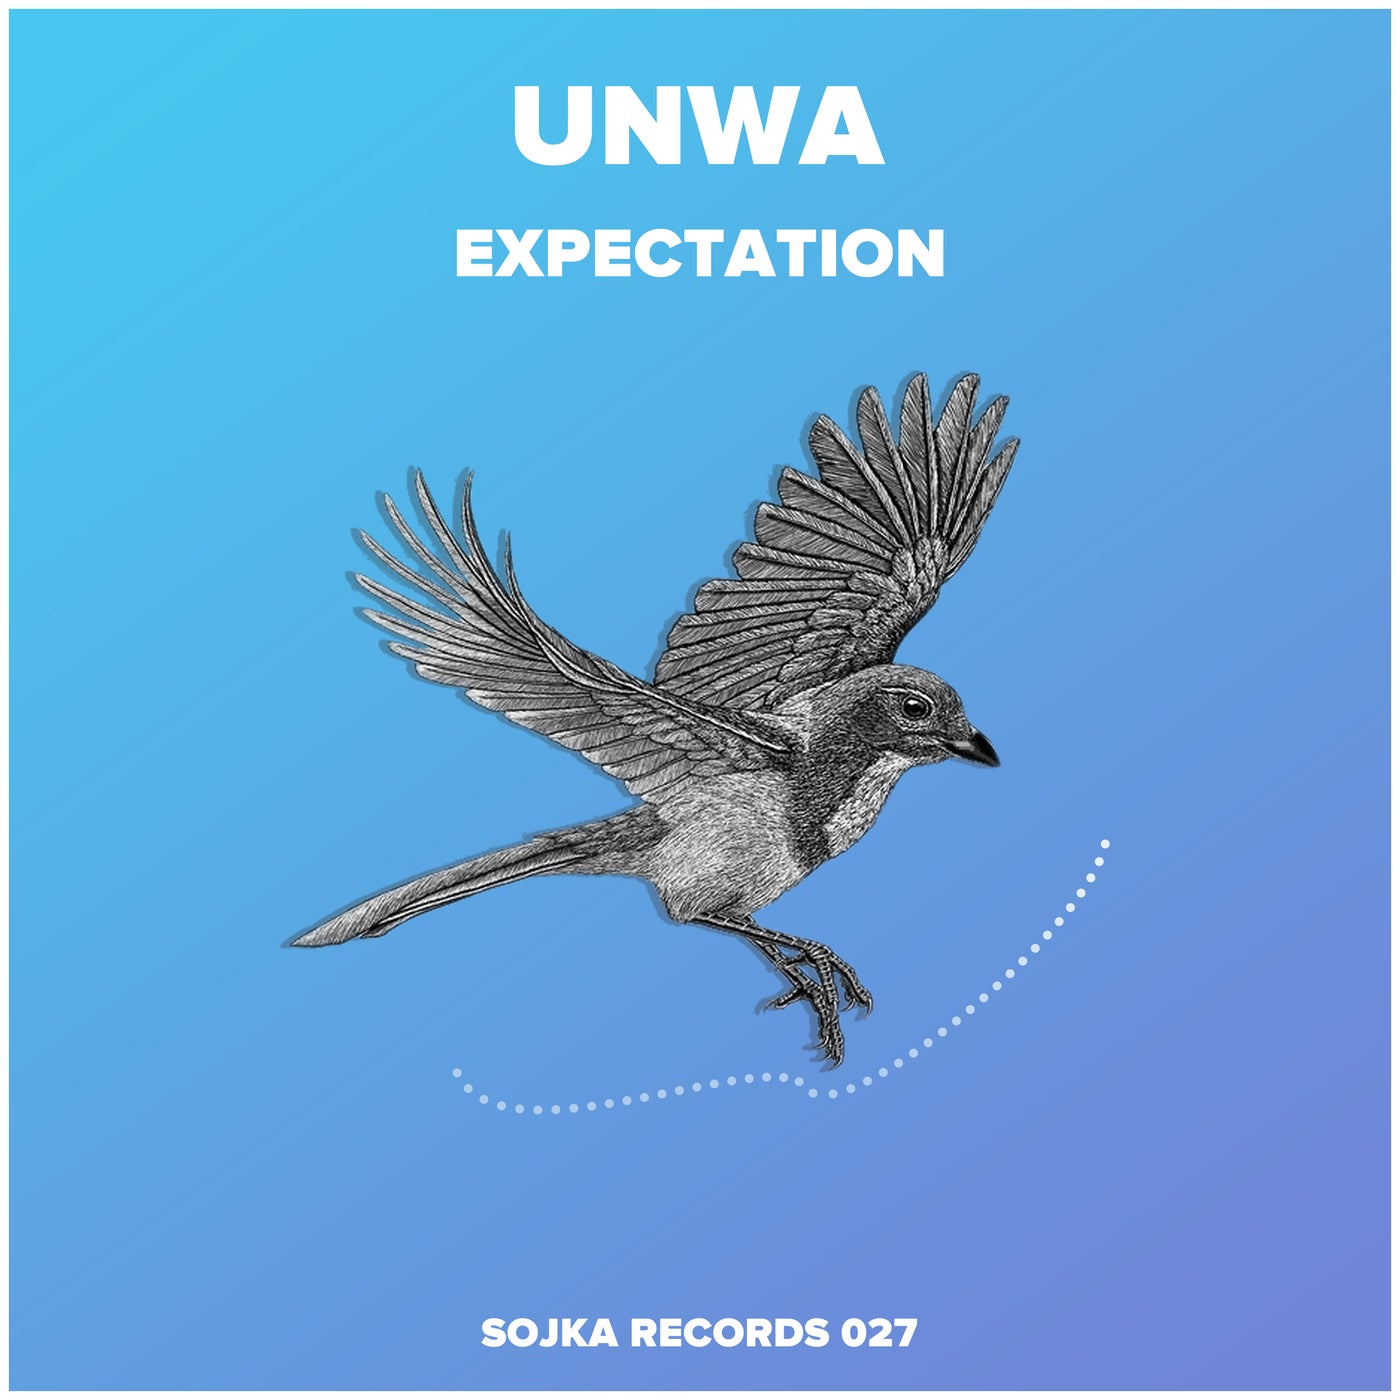 UNWA - Expectation [SR027]